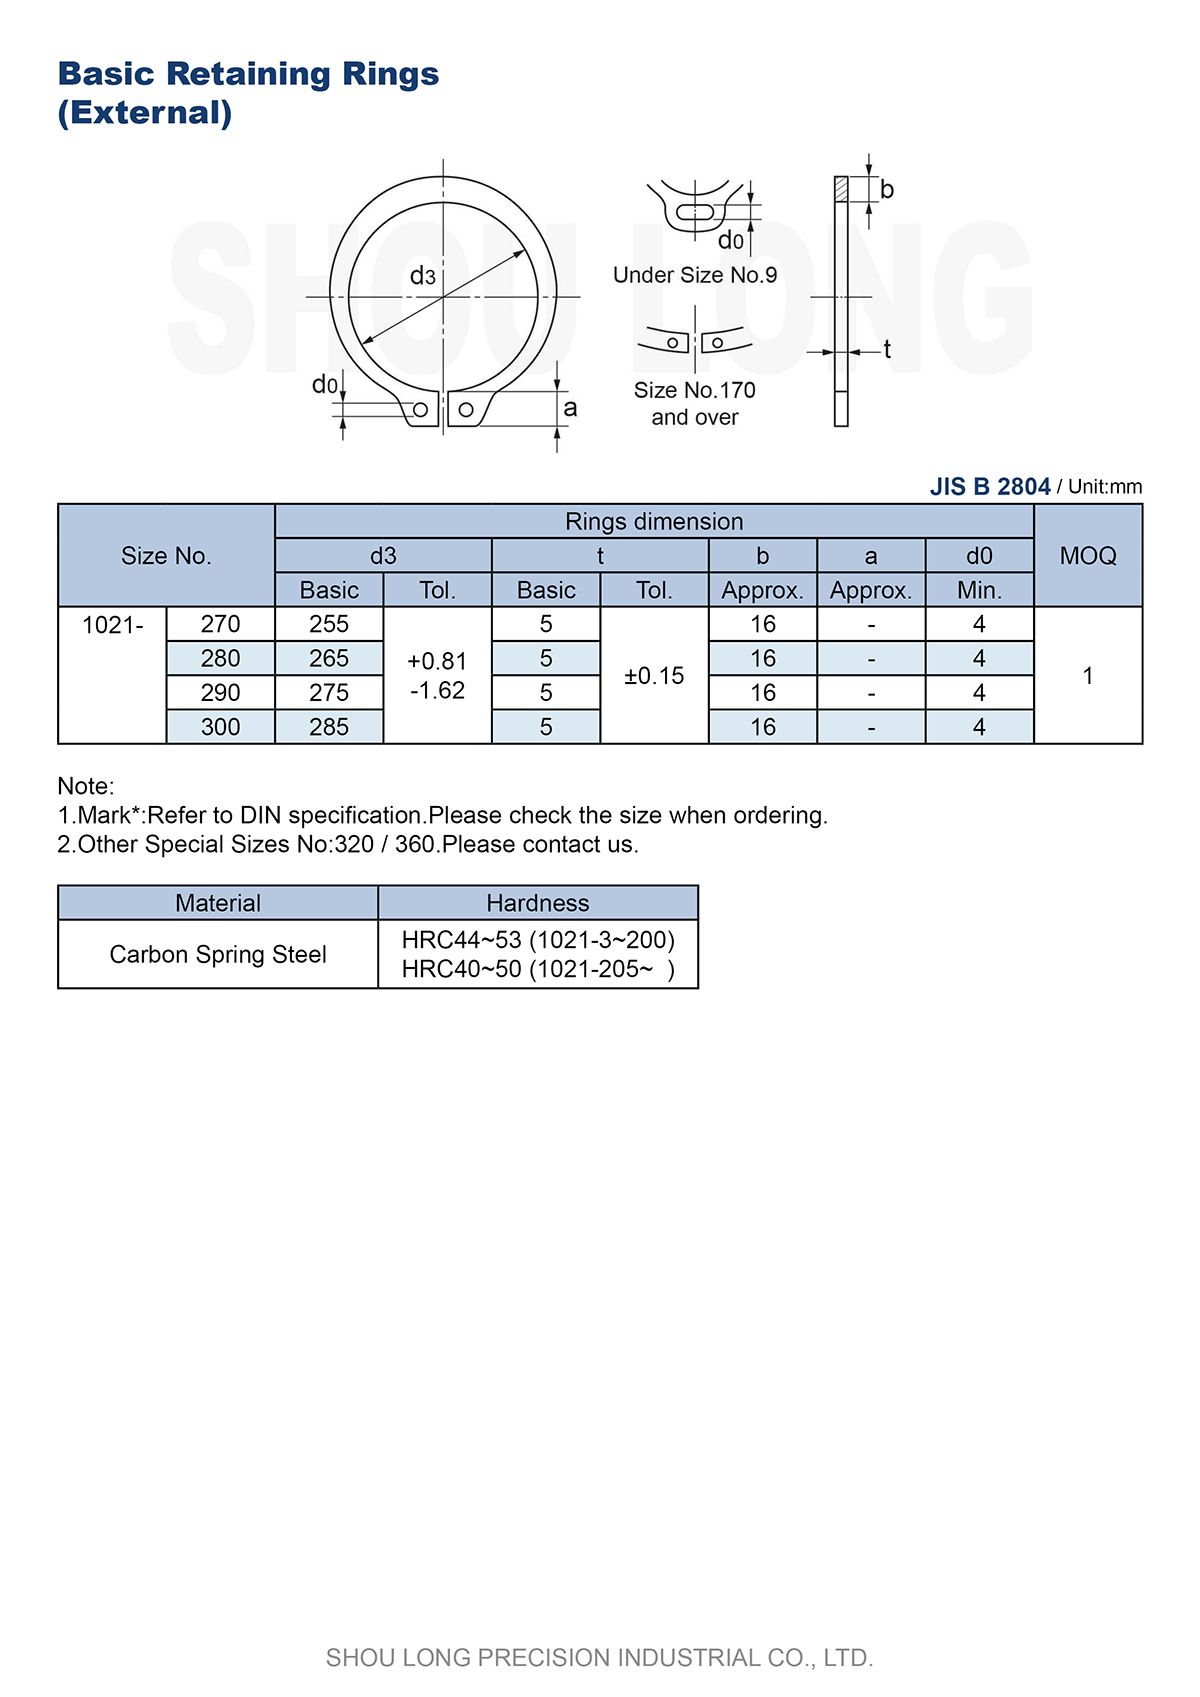 Talaan ng mga Tatak ng JIS Metric Basic Retaining Rings para sa Shaft B2804 -4